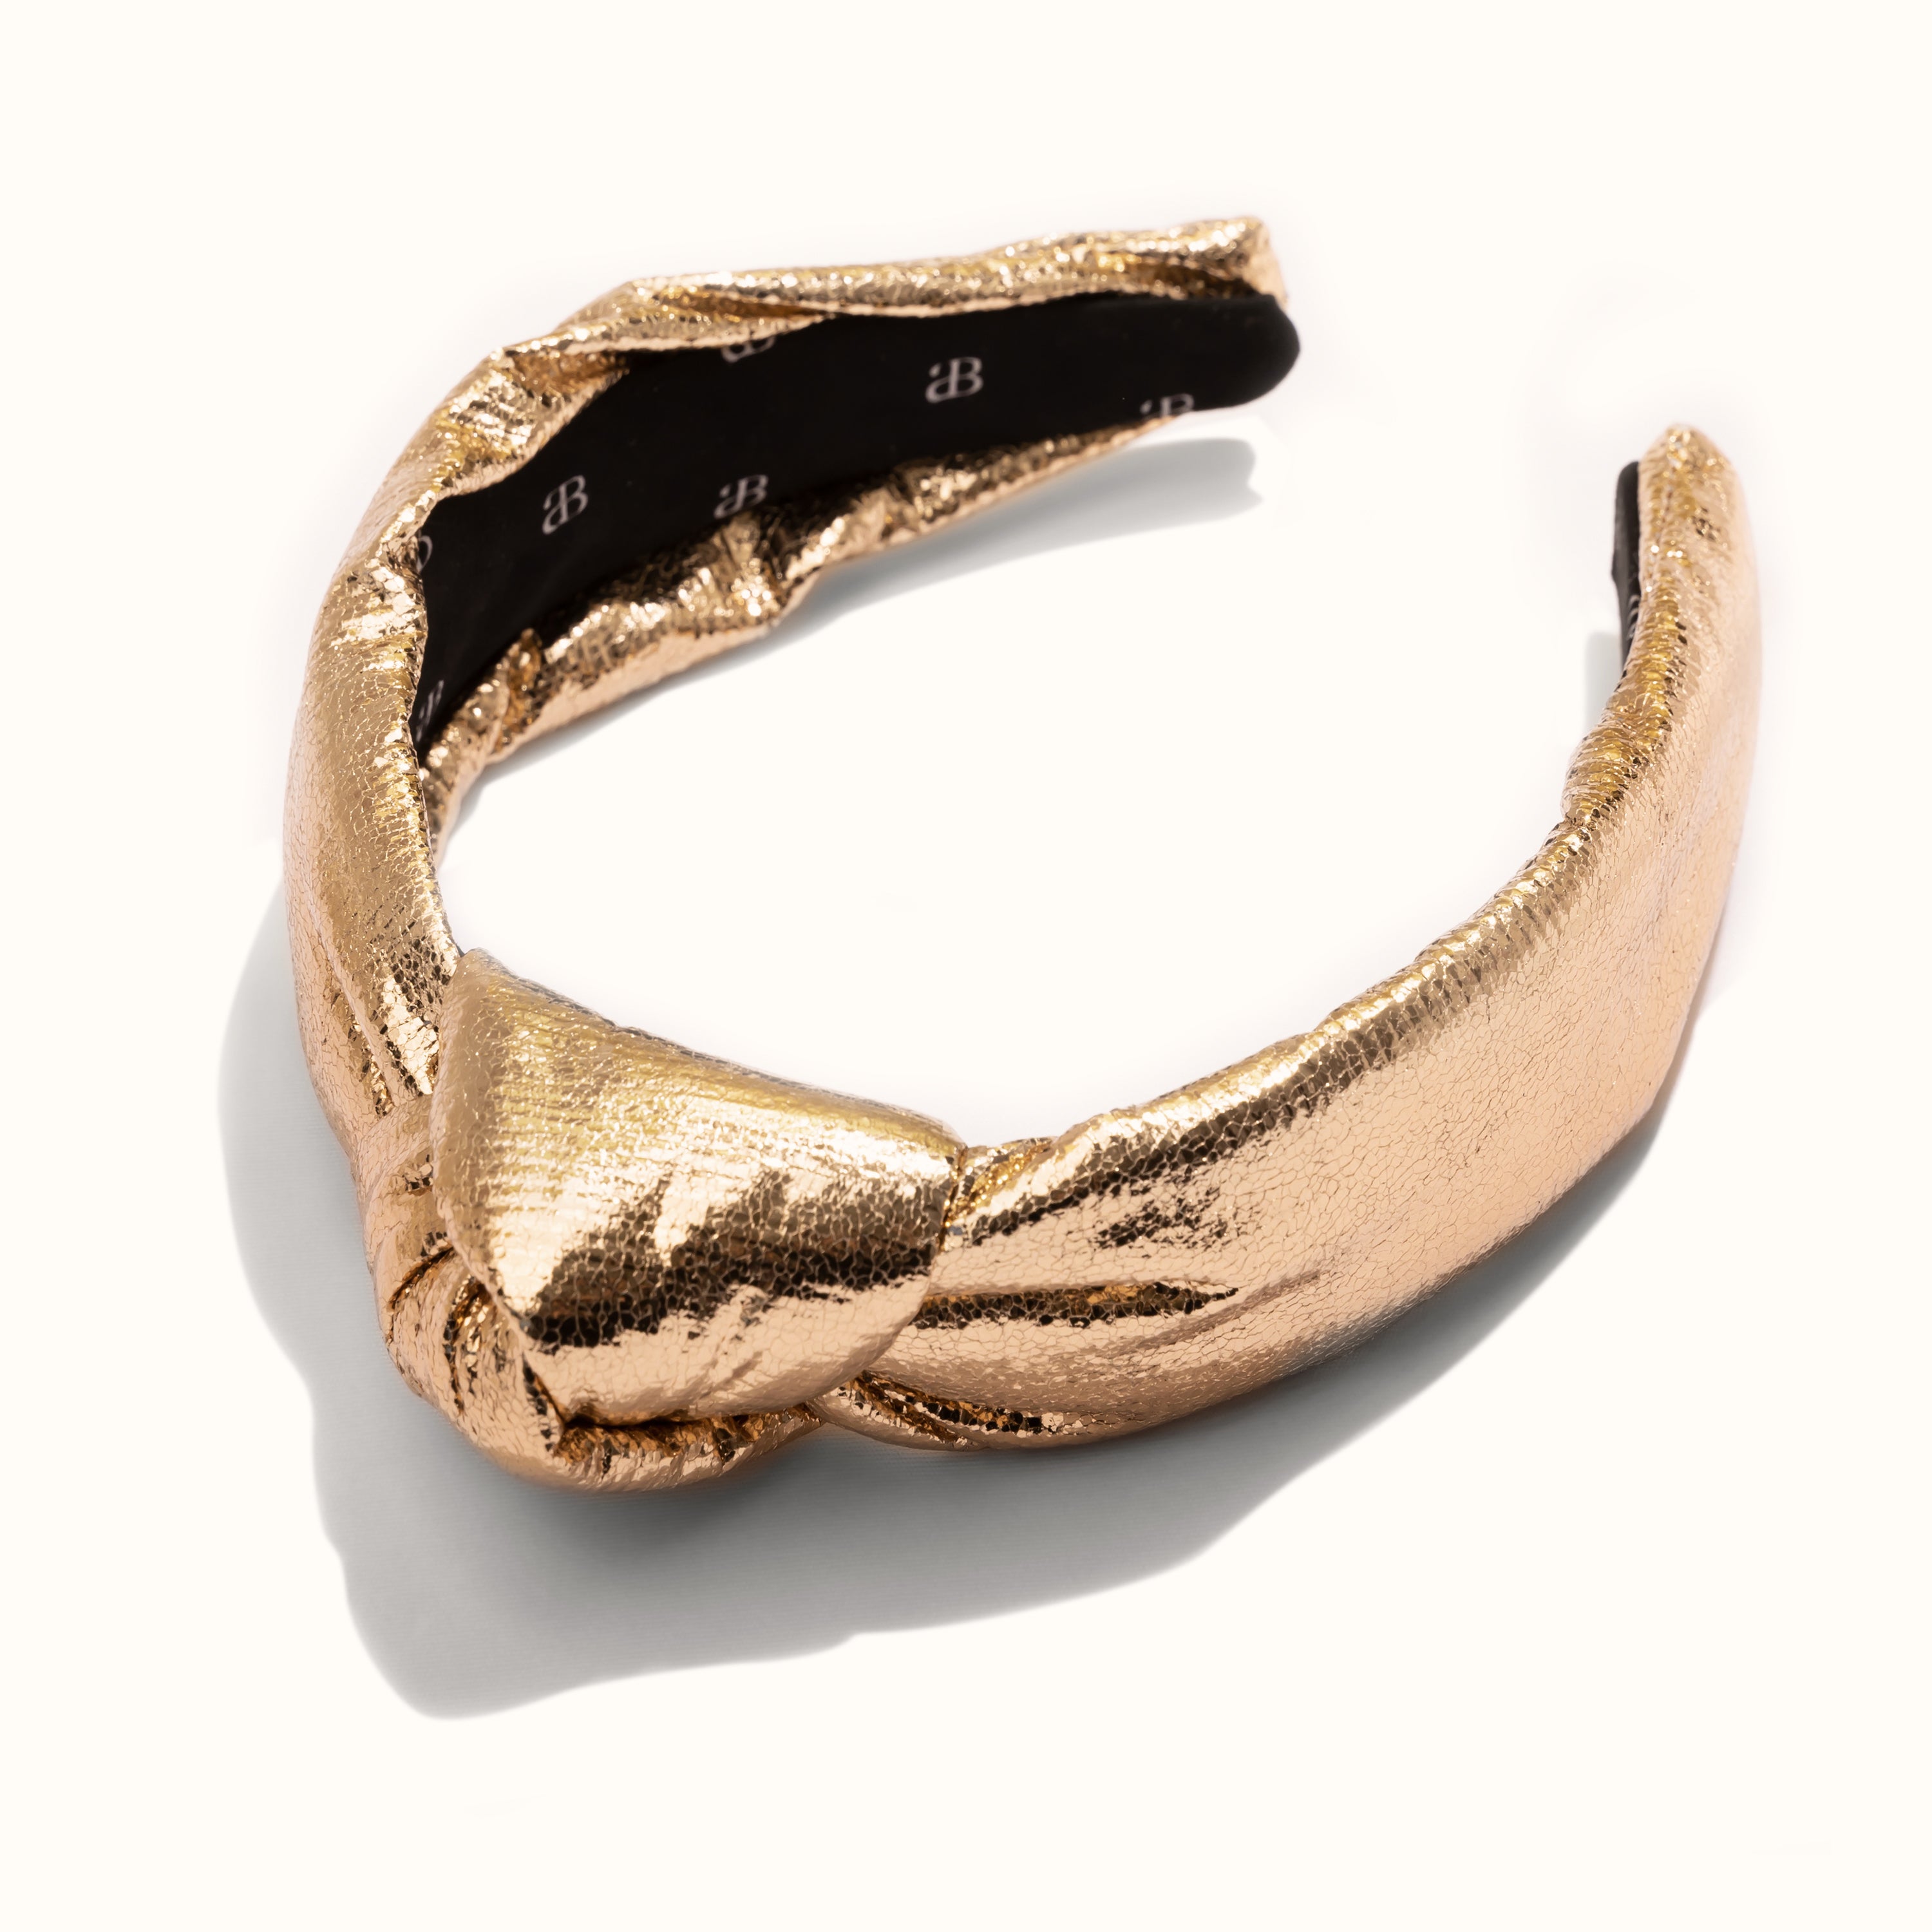 The Precious Metals Collection (Gold) - alicia bonnie jewelry